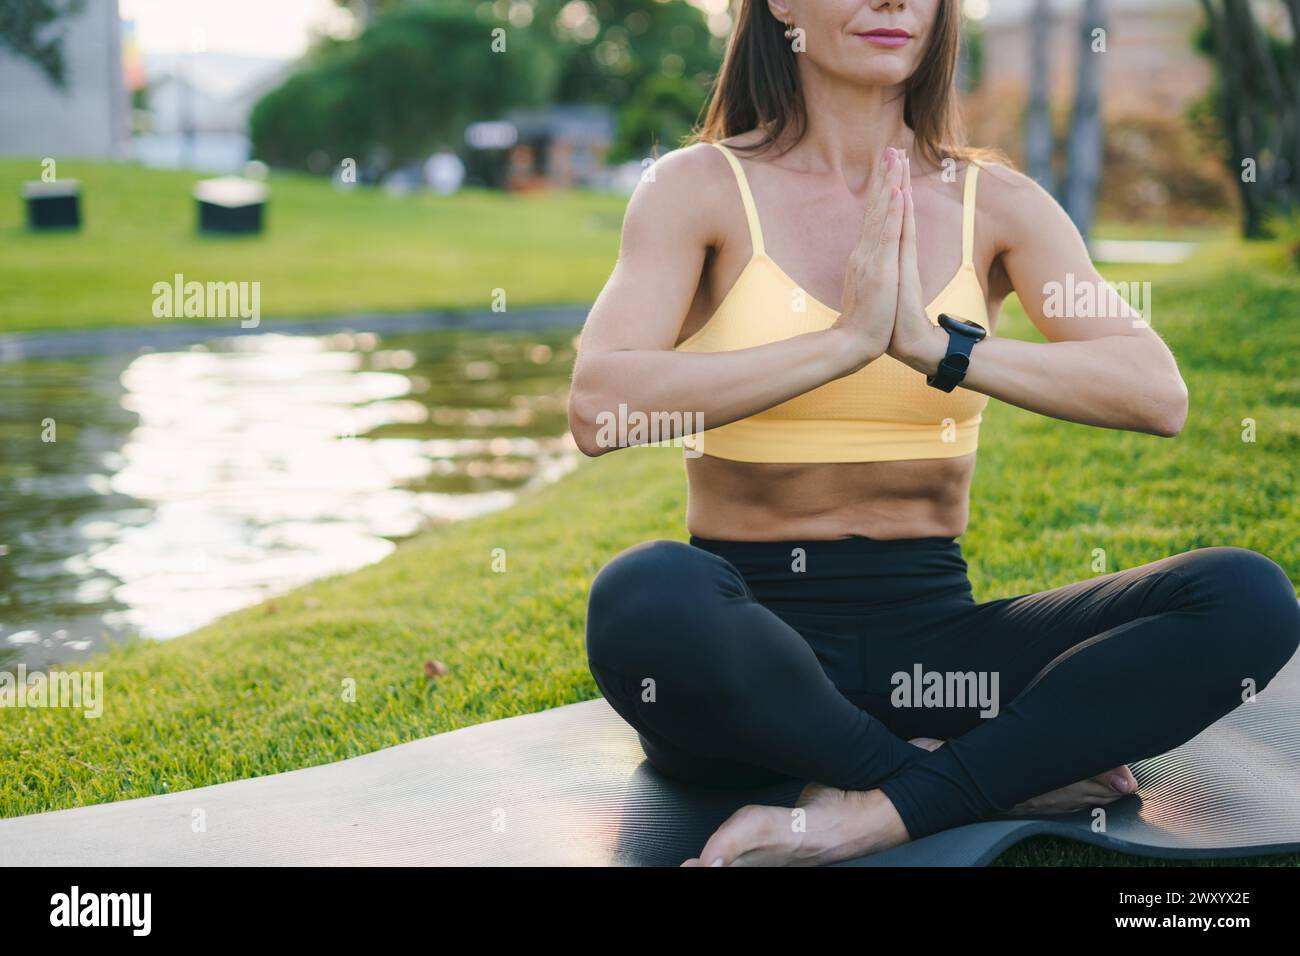 Femme adulte Happy positive fit pratiquant le yoga à l'air frais ouvert à l'extérieur assis pieds nus sur un tapis de yoga noir. La méditation a de bons bienfaits pour la santé Banque D'Images